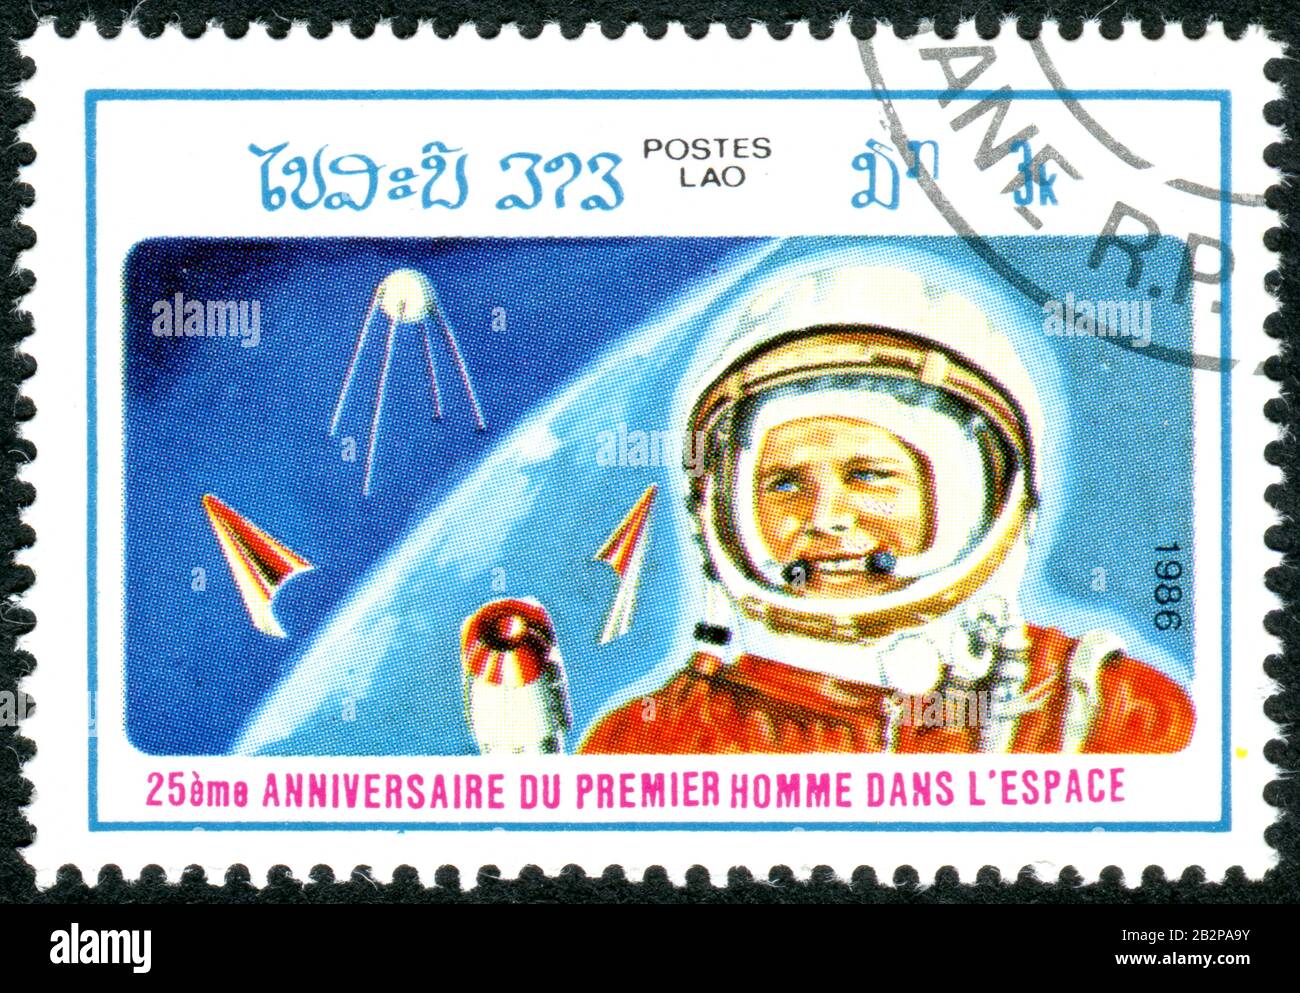 Ein in Laos aufgedruckter Stempel, der dem 25. Anniv. Des ersten Menschen im All gewidmet ist und den Kosmonauten Juri Gagarin und den ersten Erdsatelliten Sputnik 1 zeigt Stockfoto